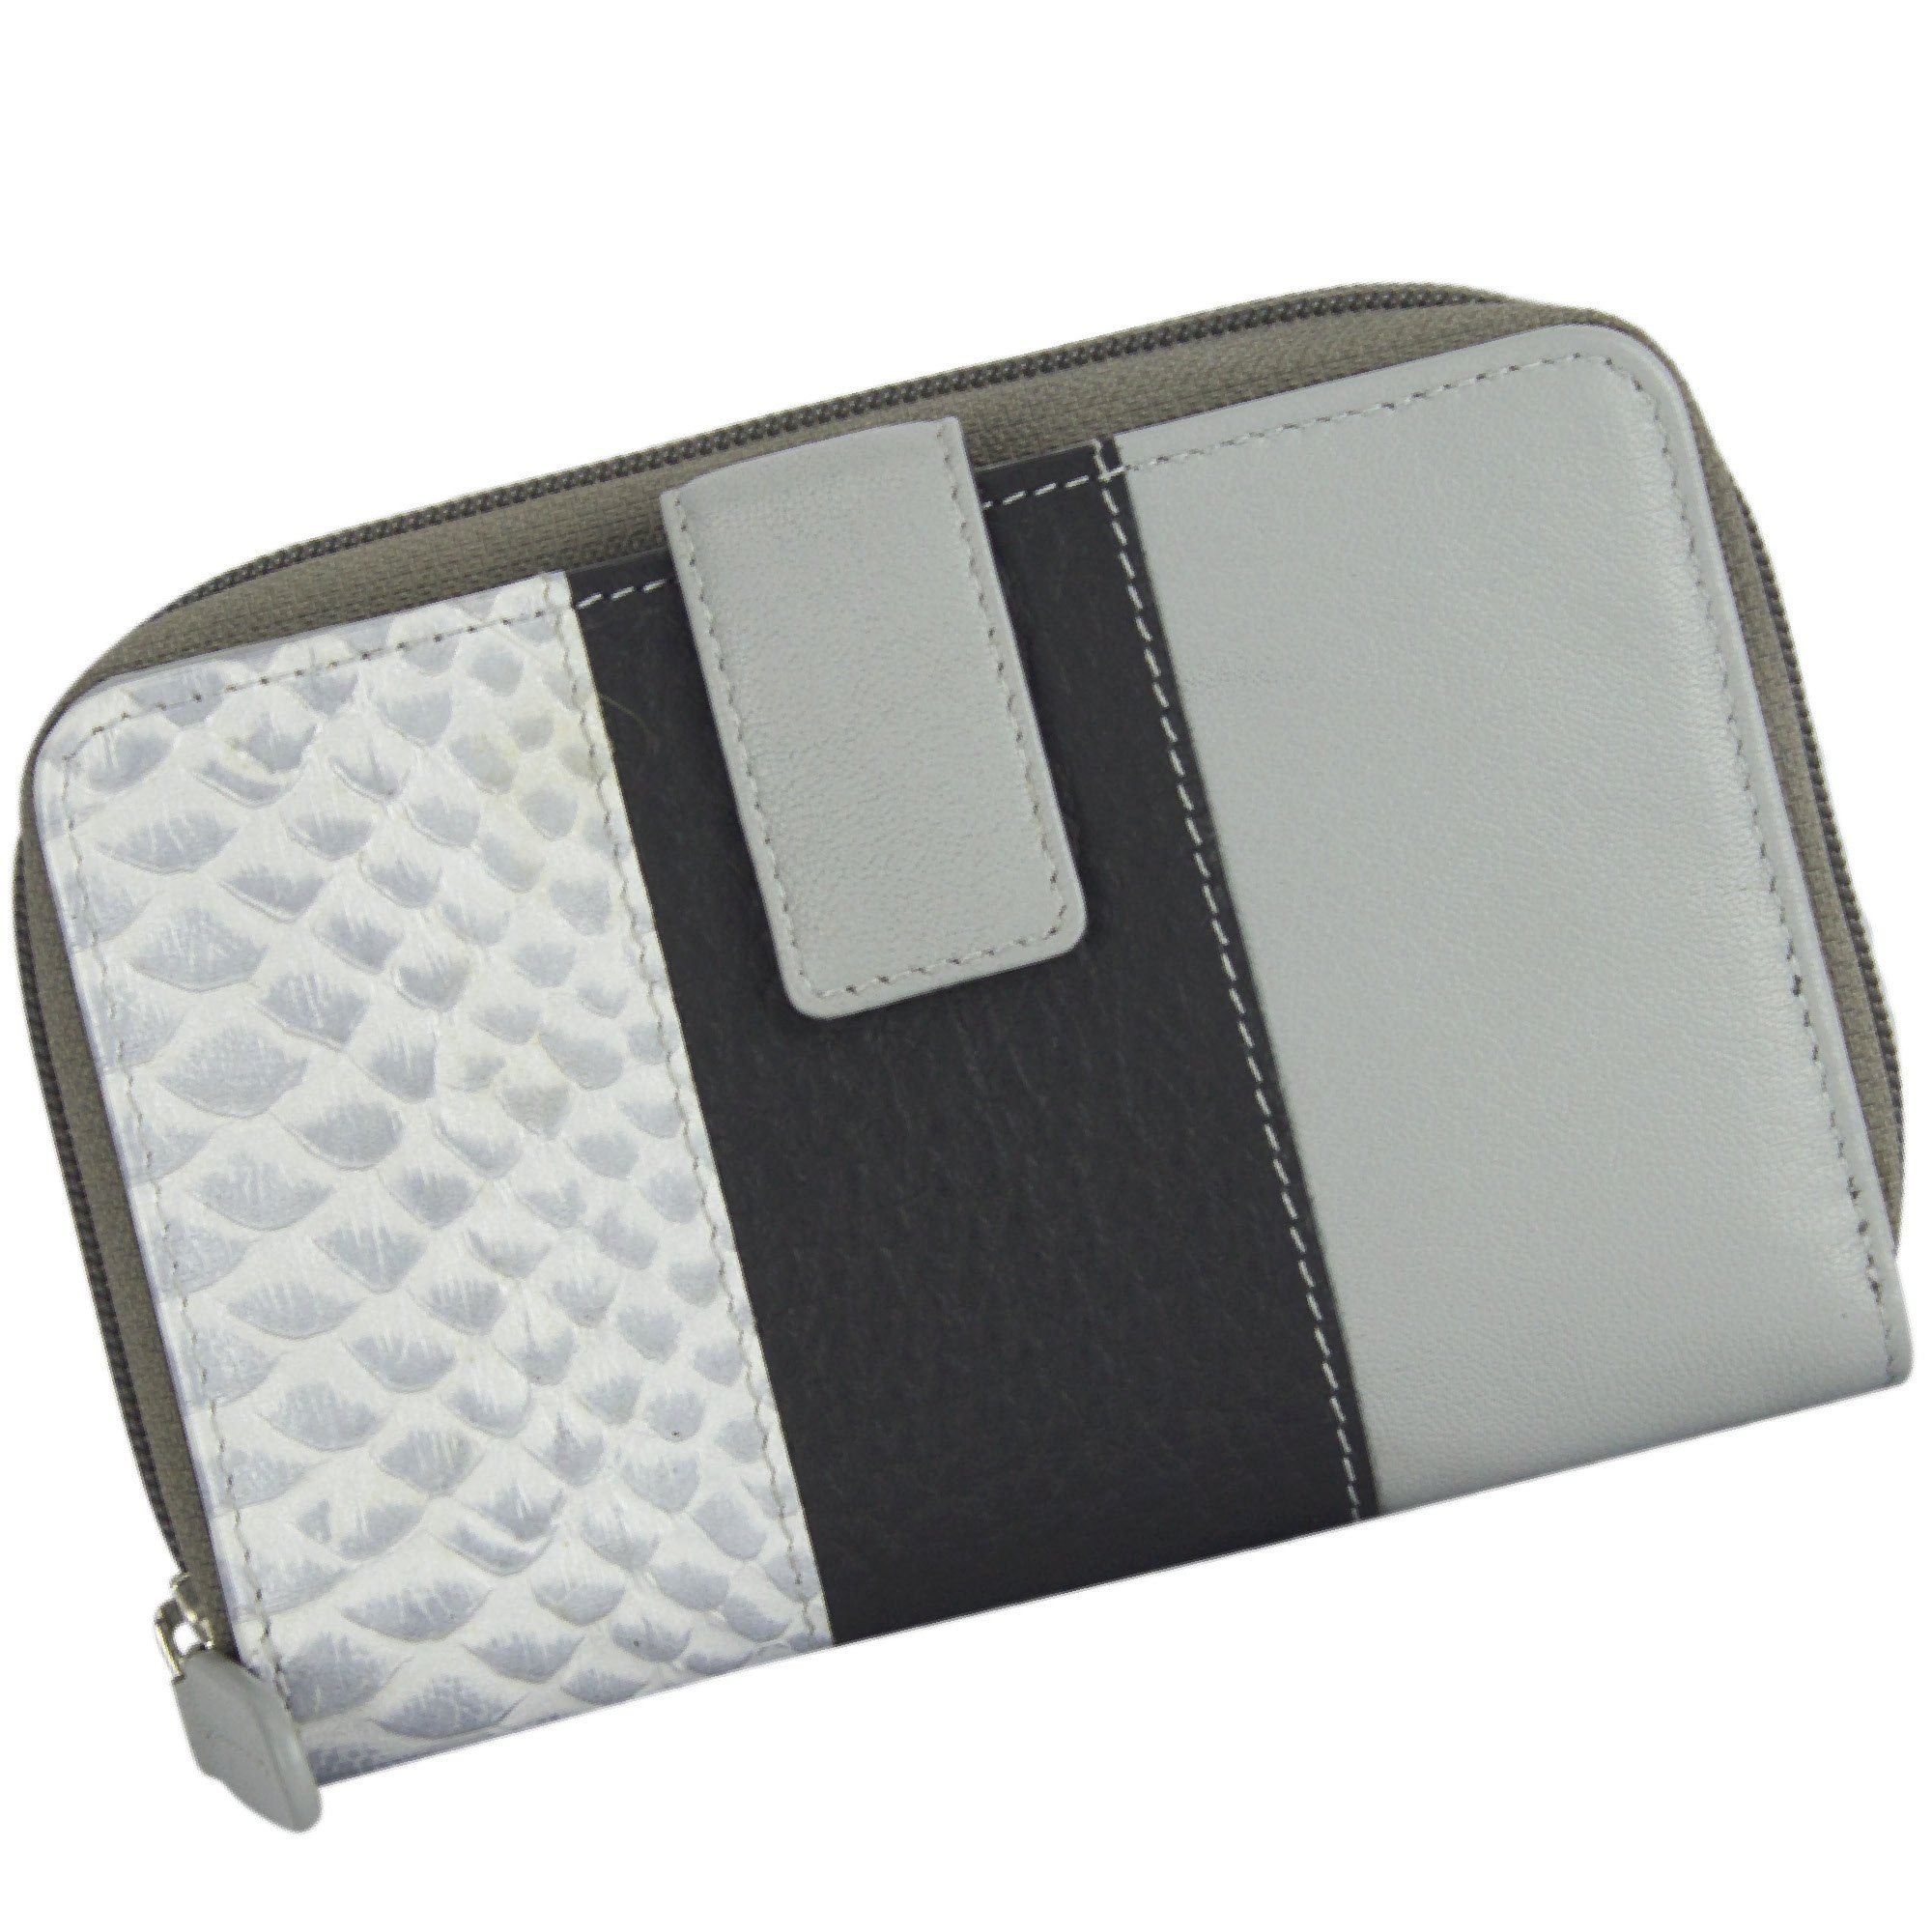 Sunsa Geldbörse Leder Geldbeutel Portemonnaie aus Lederresten Brieftasche, echt Leder, mit RFID-Schutz, in zeitlosen Design grau